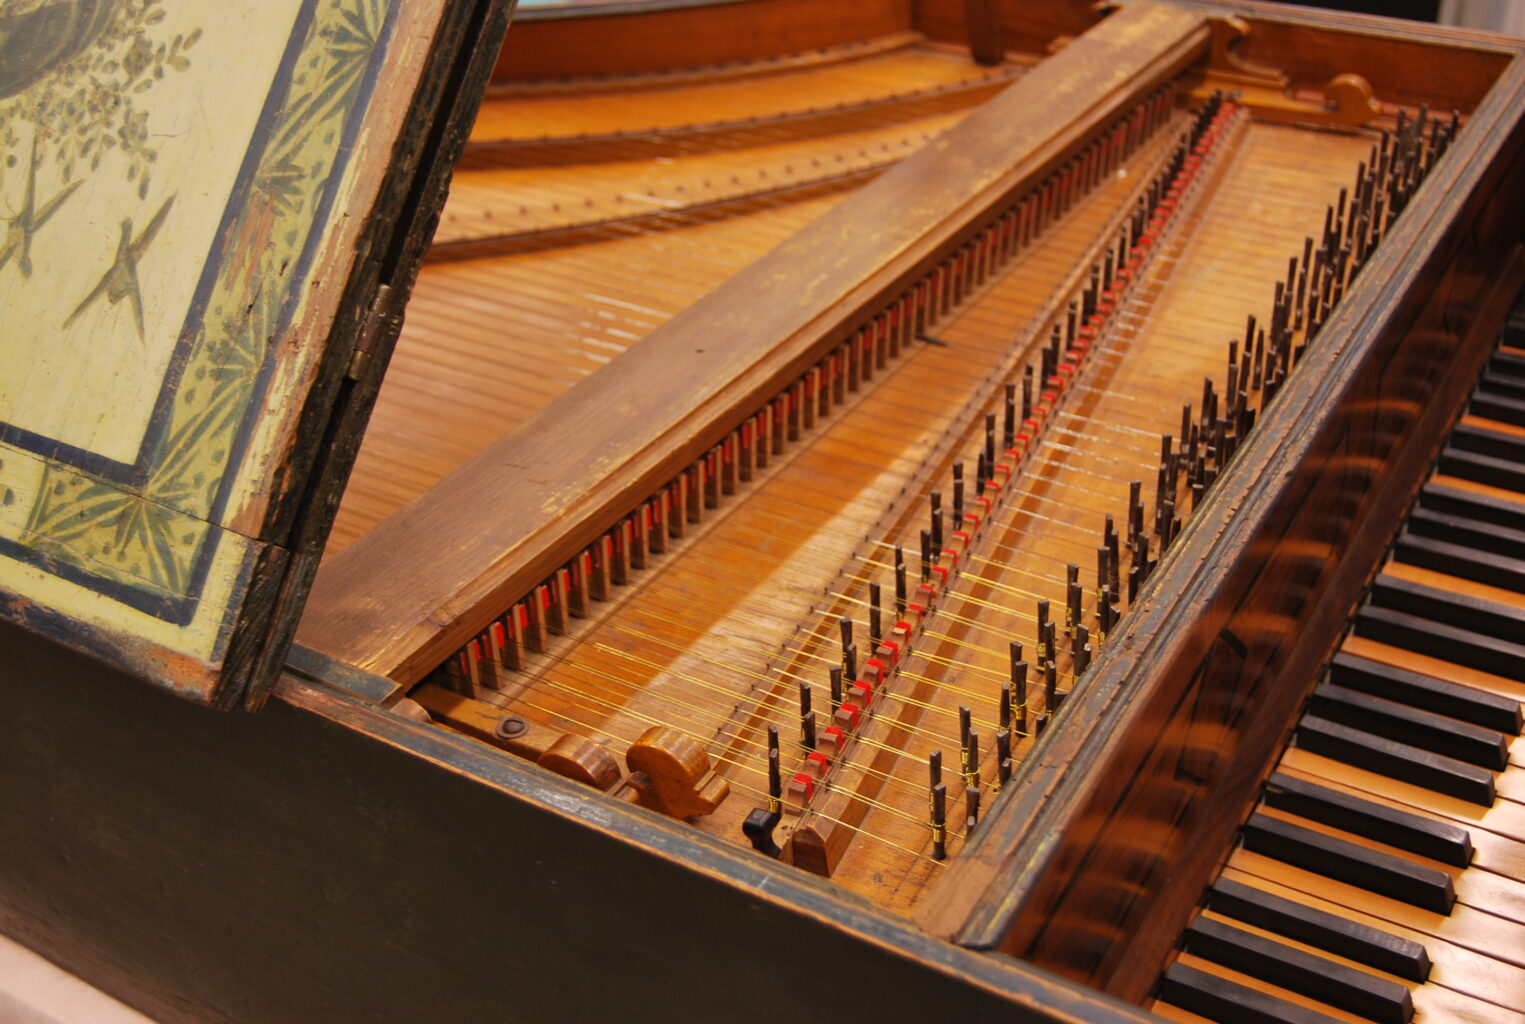 Detail image of harpsichord keys and strings